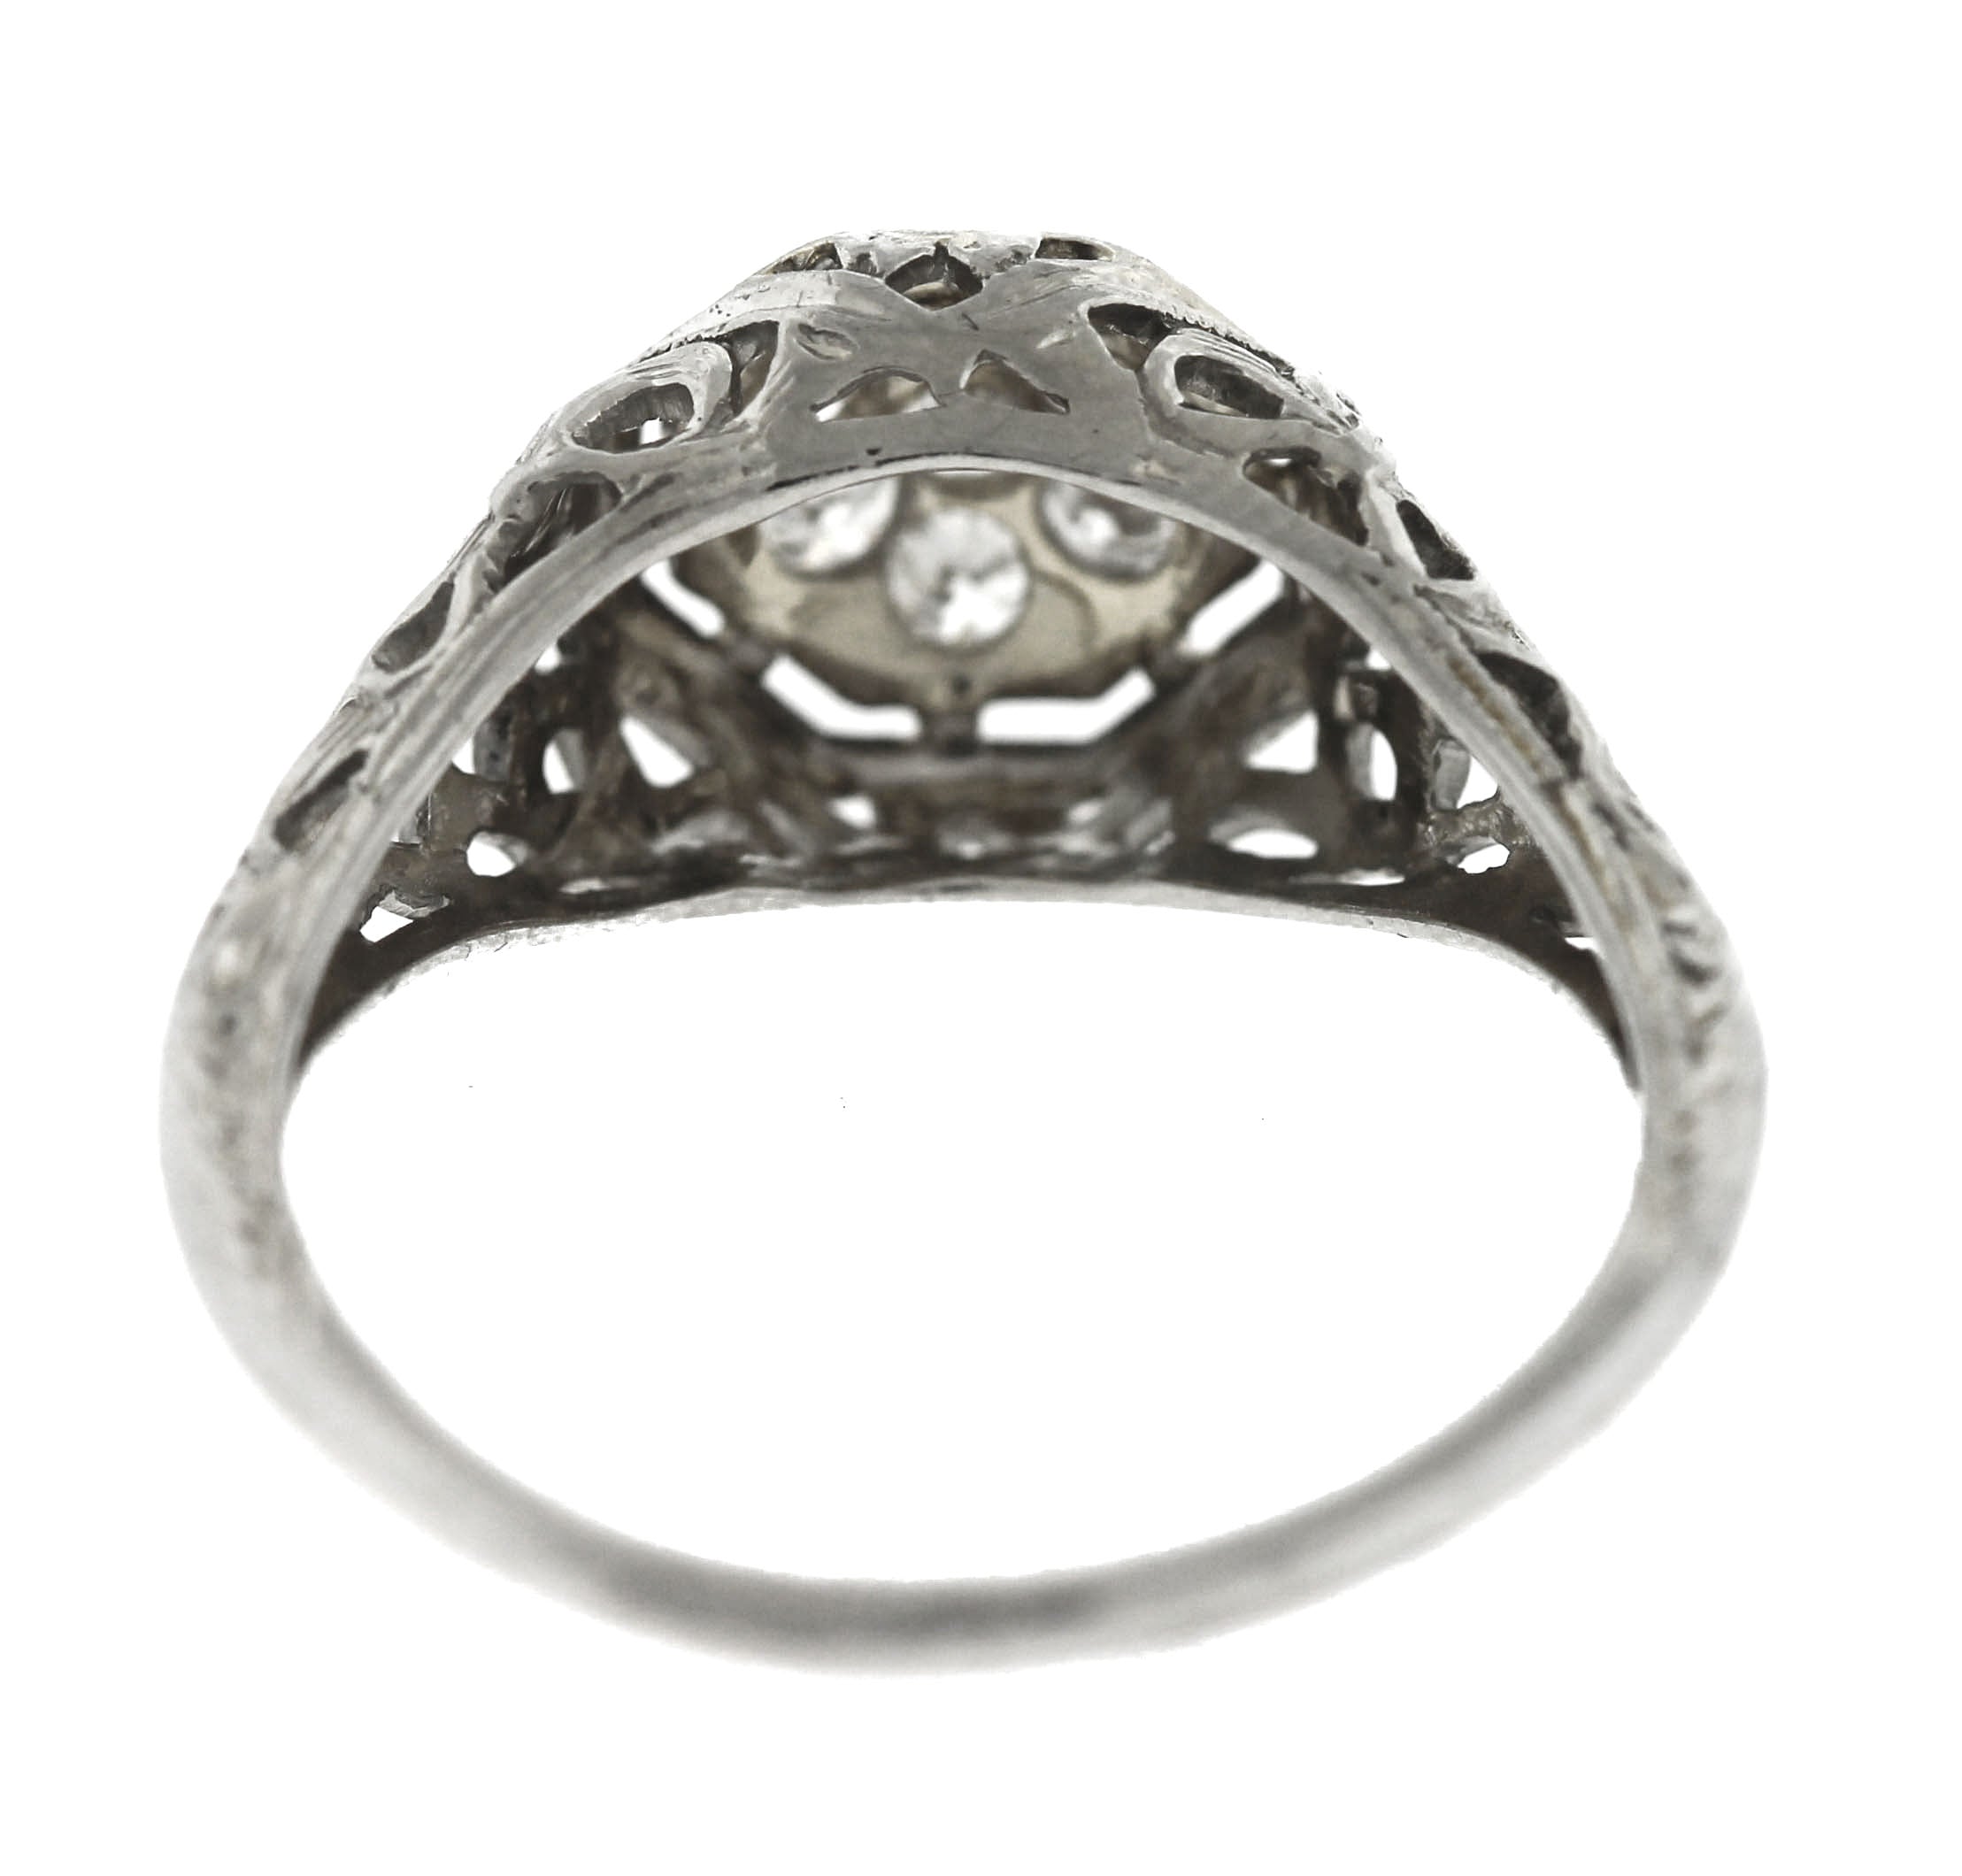 Ladies Antique Art Deco Estate 14K White Gold 0.21ctw Diamond Engagement Ring